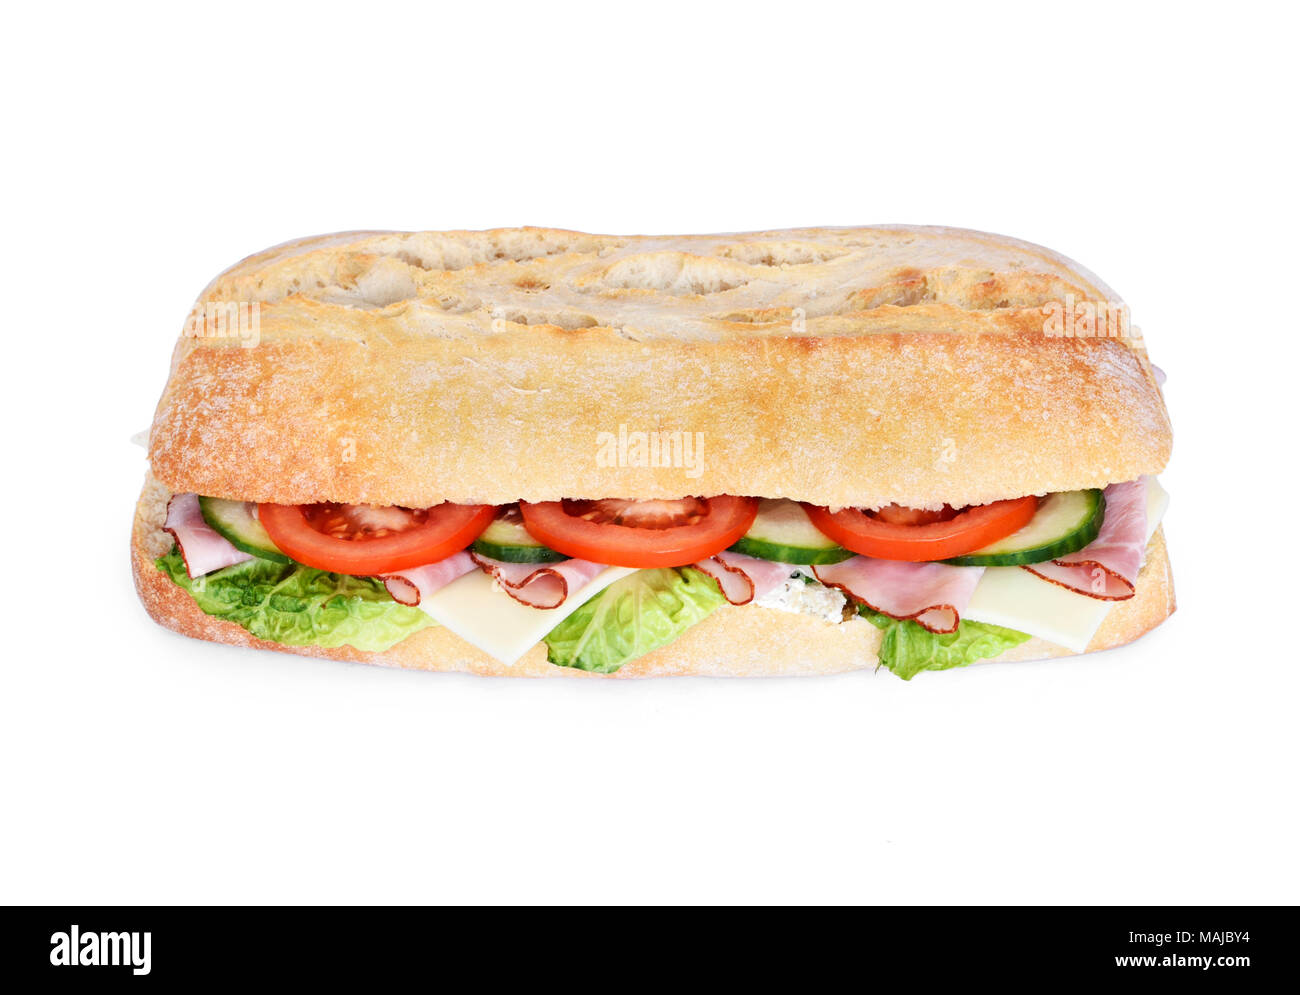 La ciabatta delizioso sandwich con pomodori freschi, prosciutto e formaggio. Sandwich di insalata o baguette, isolato su sfondo bianco. Club sandwich. Foto Stock